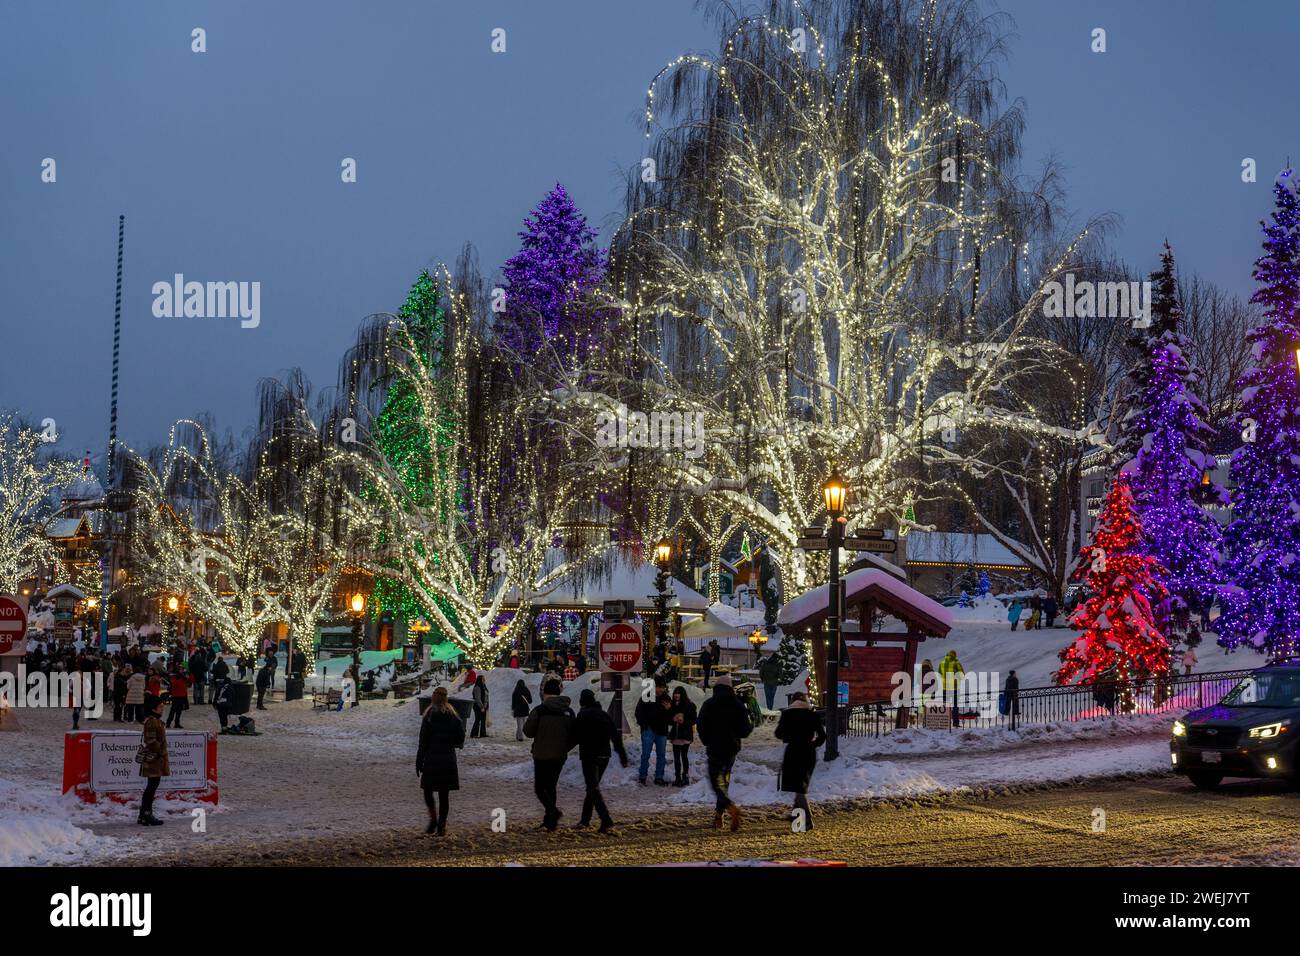 Scène d'hiver avec des lumières colorées dans le centre-ville de Leavenworth, comté de Chelan, État de Washington oriental, États-Unis. Banque D'Images